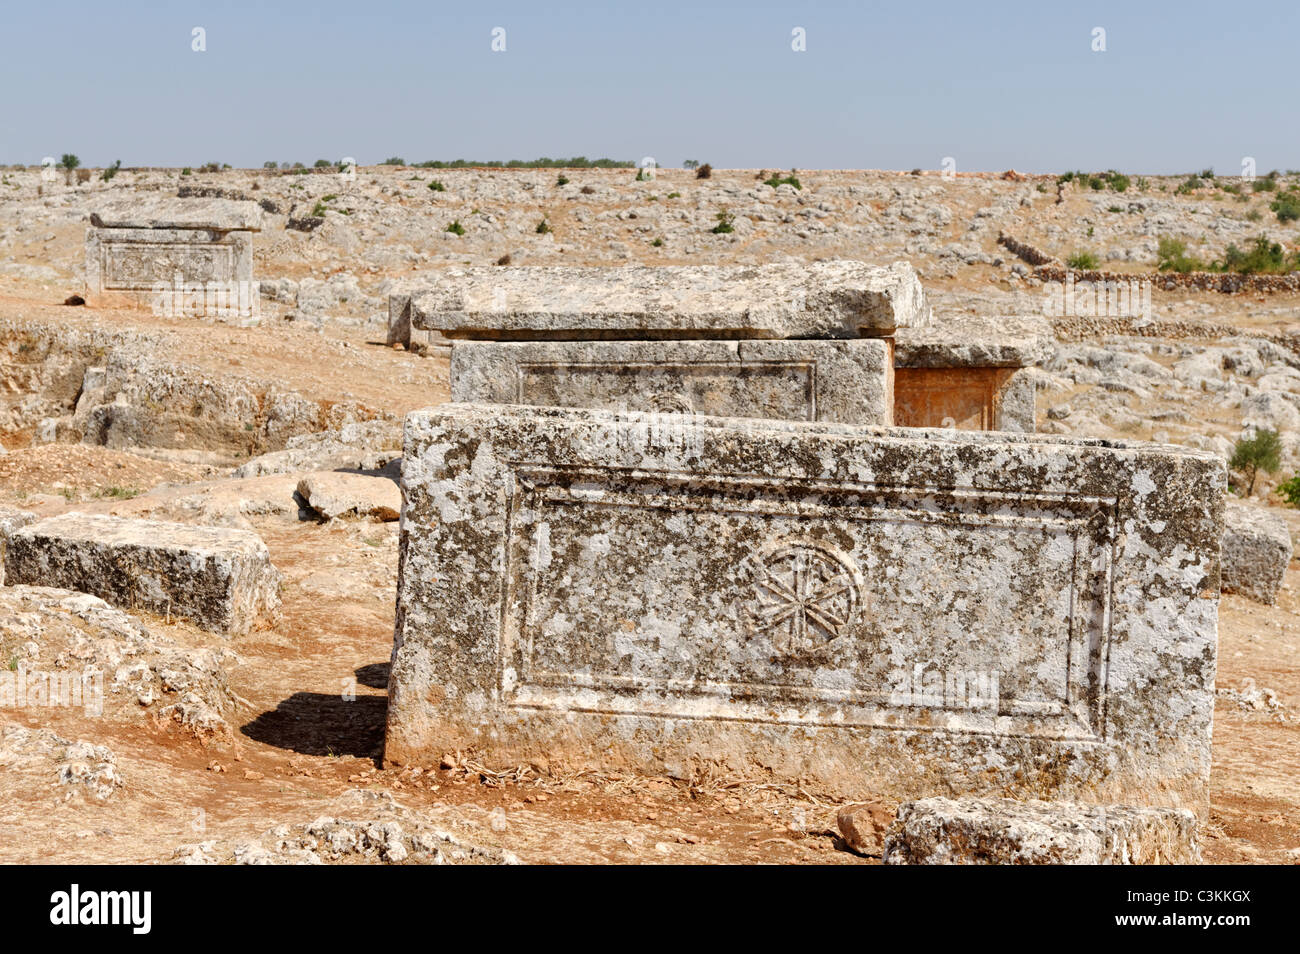 Sarcófagos bizantinas abandonadas están dispersas alrededor de la necrópolis de la ciudad muerta de Serjilla en el noroeste de Siria. Foto de stock